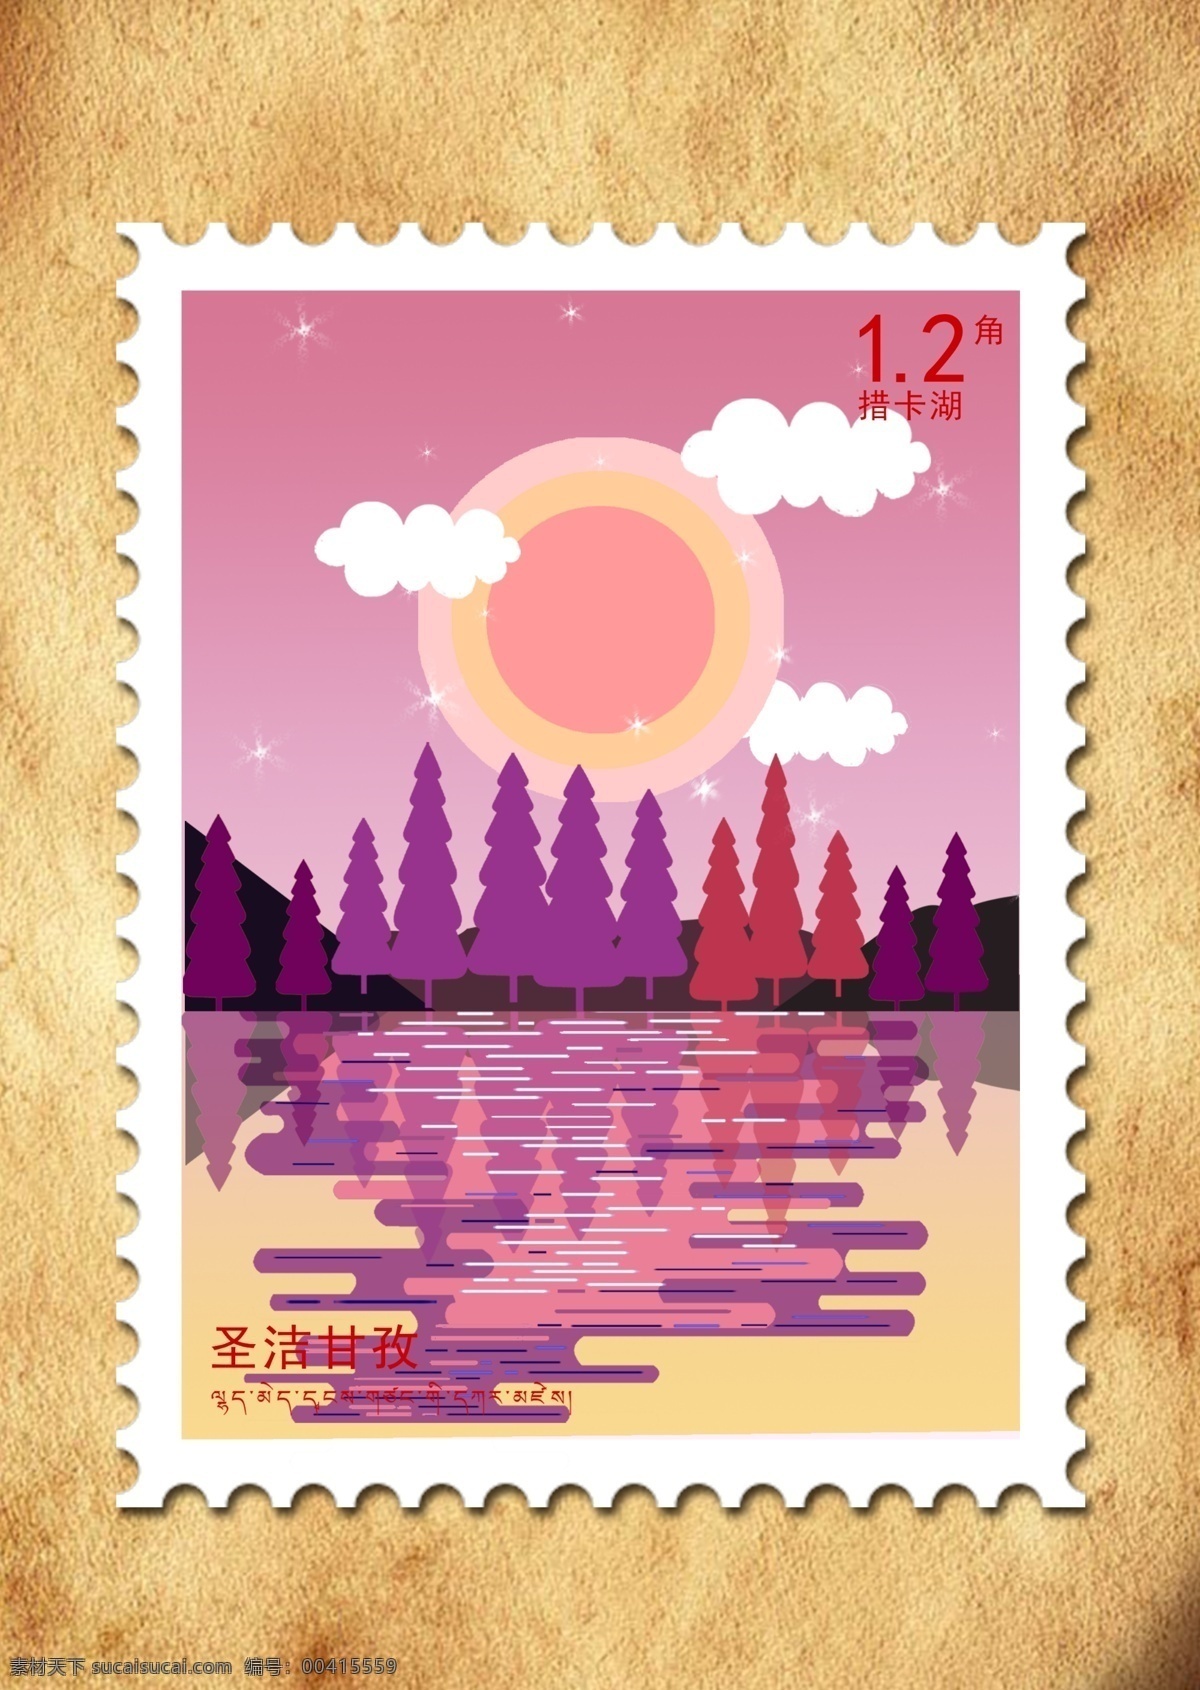 措 卡 湖 邮票 创意 插画 海报 小清新 旅游 措卡湖 创意邮票